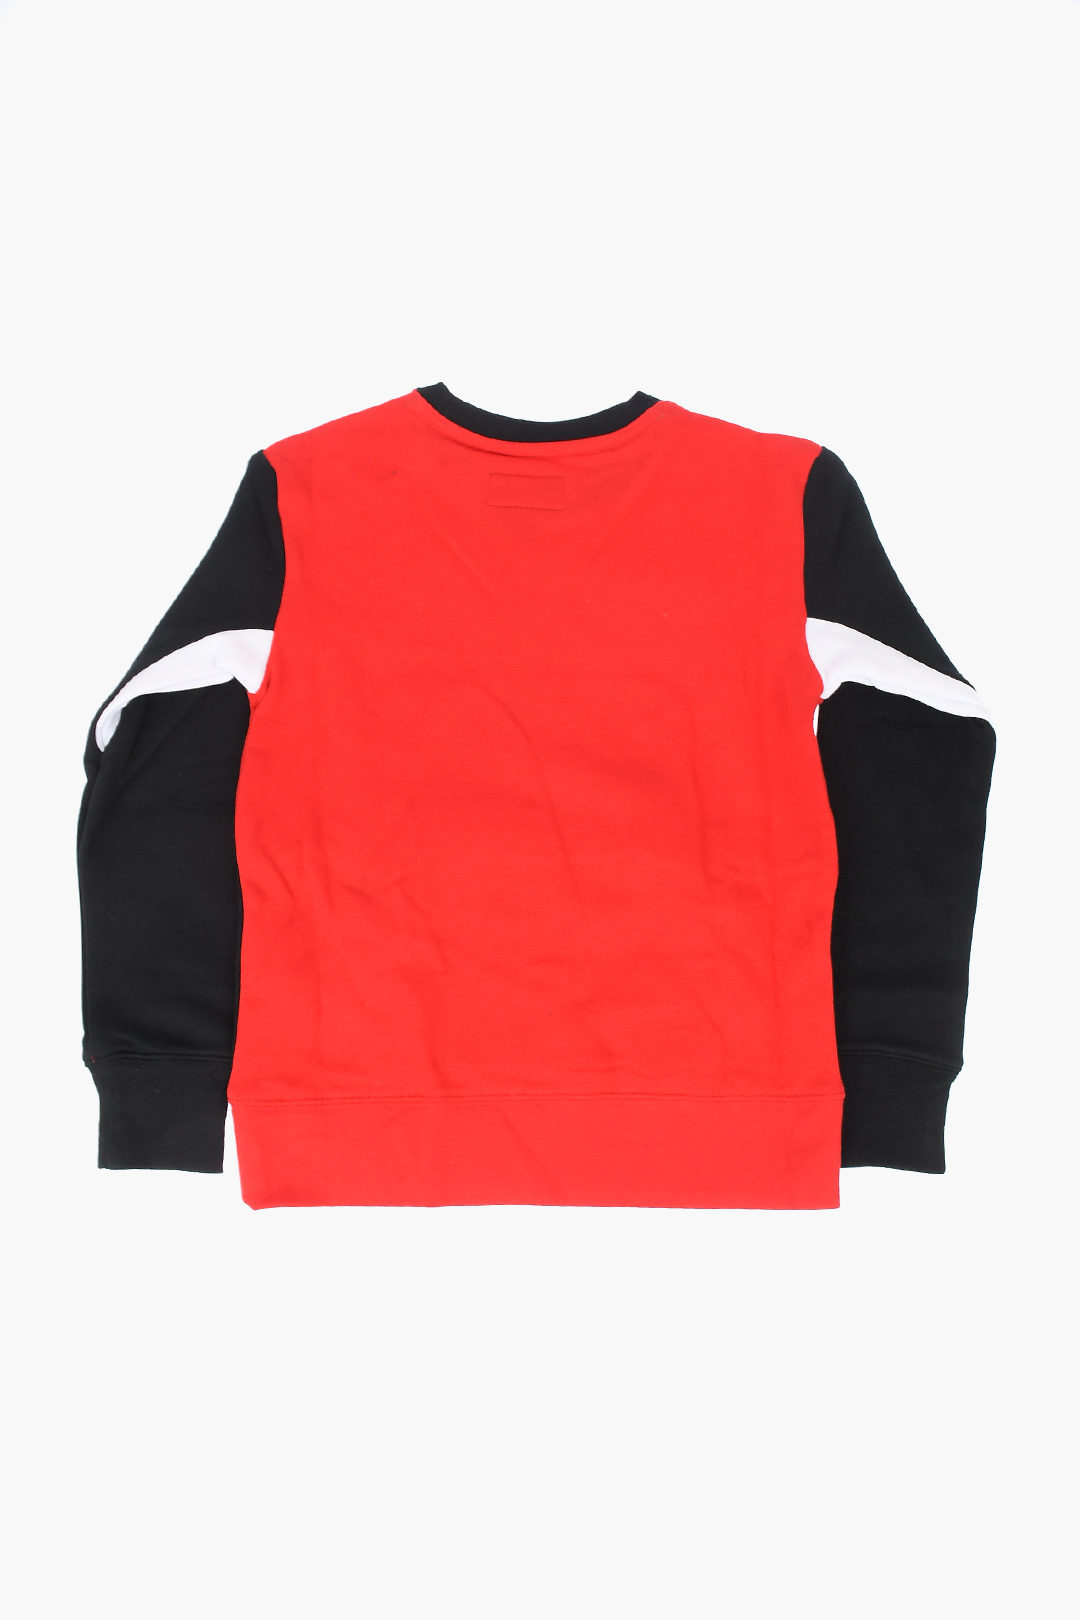 Nike KIDS AIR JORDAN Logo Printed Sweatshirt boys - Glamood Outlet